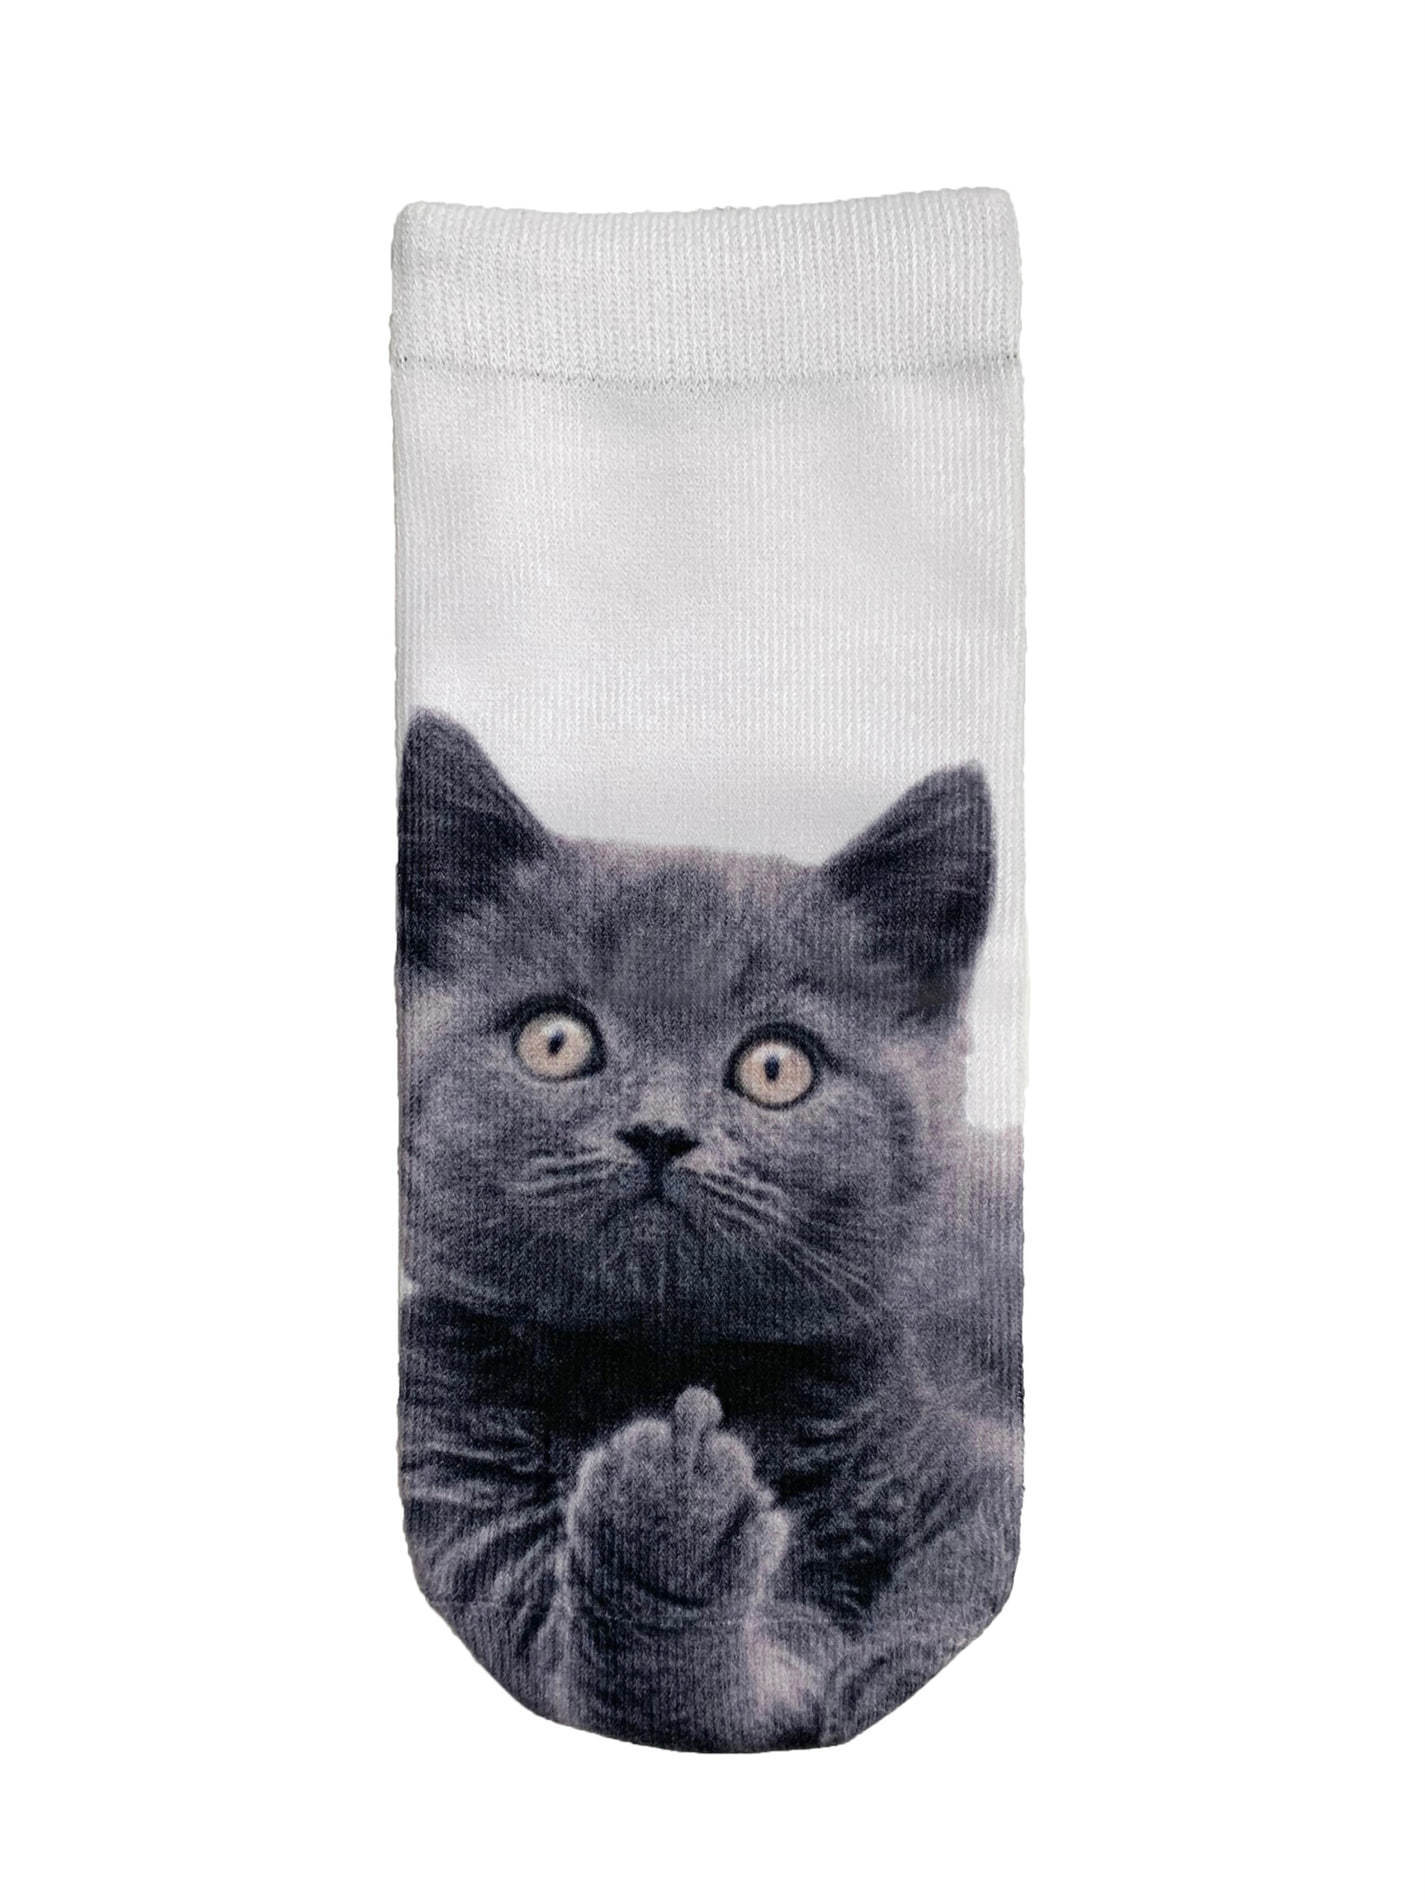 fxxk cat socks